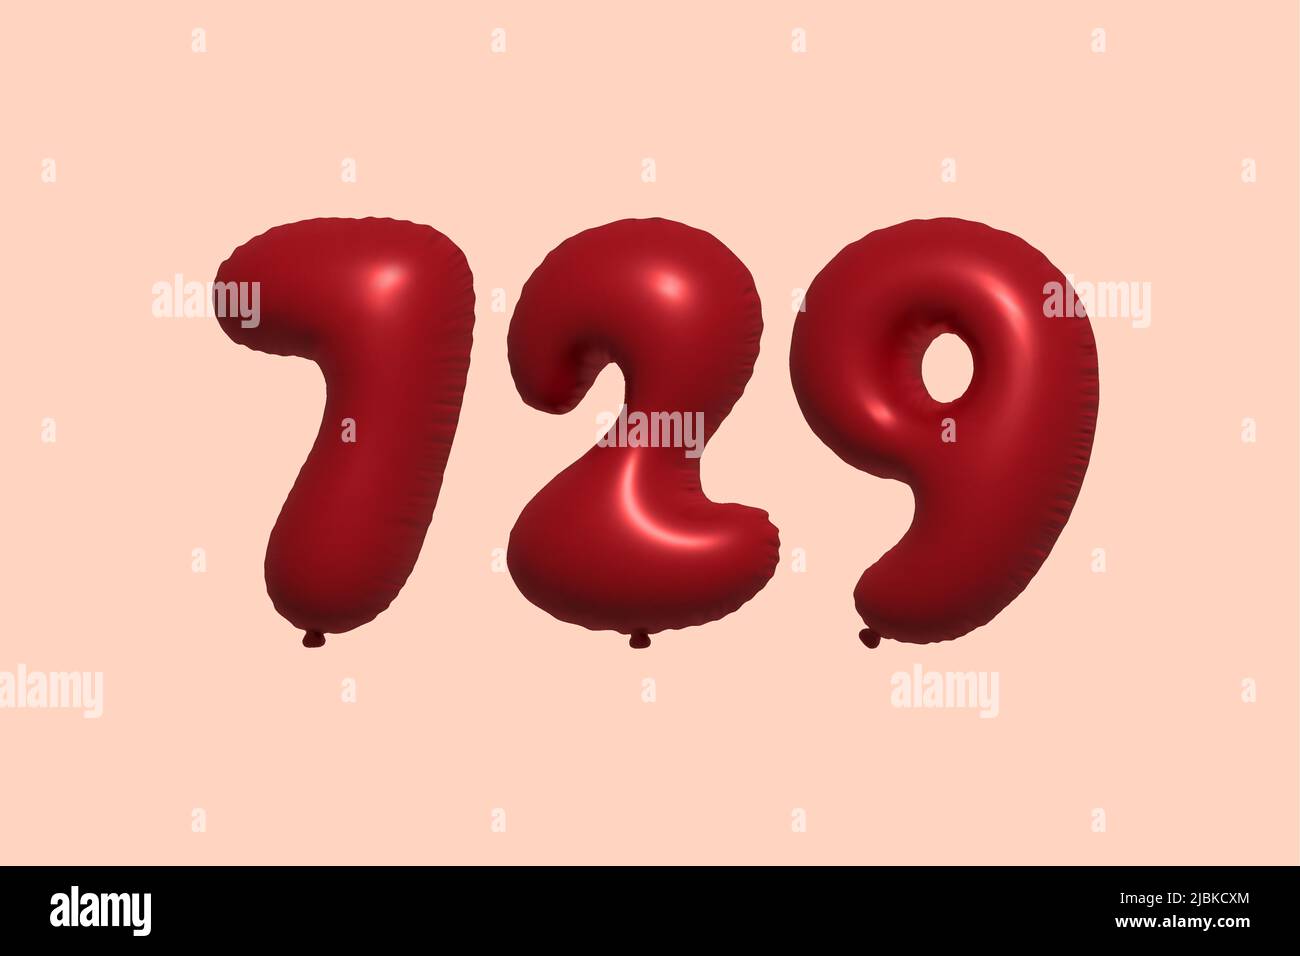 globo de 729 3d números hecho de aeroglobo metálico realista 3d renderizado. 3D globos rojos de helio para la venta decoración Fiesta Cumpleaños, Celebración de aniversario, Vacaciones de boda. Ilustración vectorial Ilustración del Vector